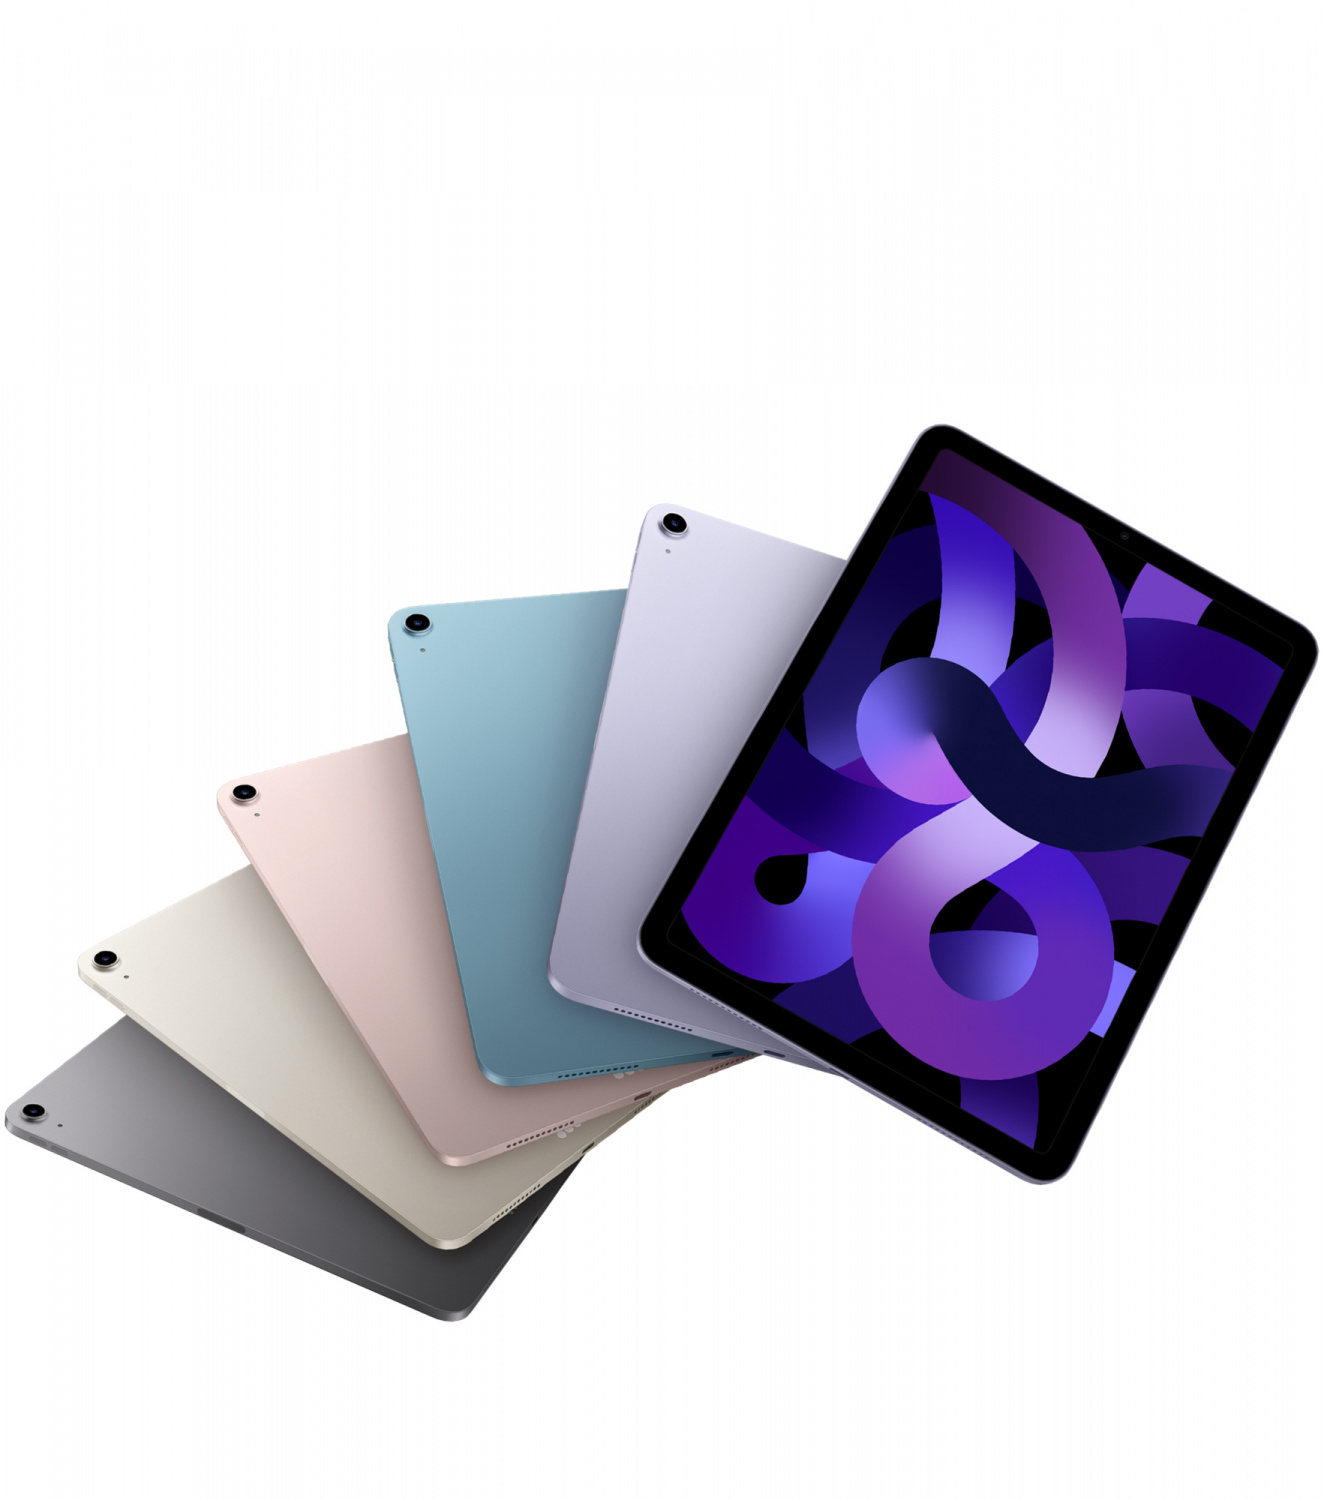 Купить планшет apple ipad air 5 поколение m1 2022 wi-fi + cellular 64 гб, space grey  Apple iPad Air в официальном магазине Apple, Samsung, Xiaomi. iPixel.ru Купить, заказ, кредит, рассрочка, отзывы,  характеристики, цена,  фотографии, в подарок.